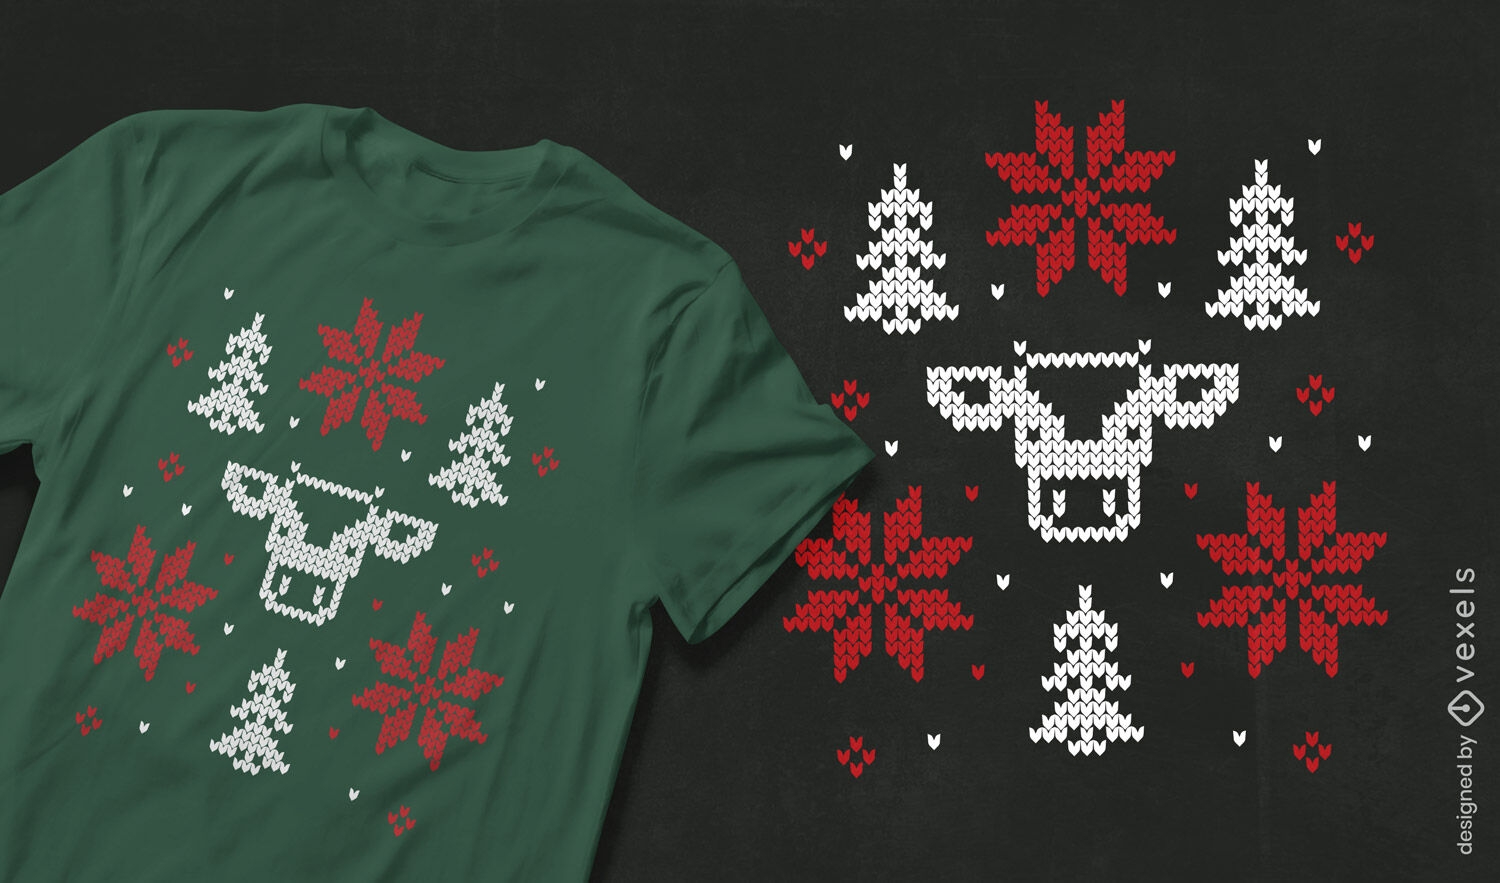 Diseño de camiseta navideña fea de vaca.